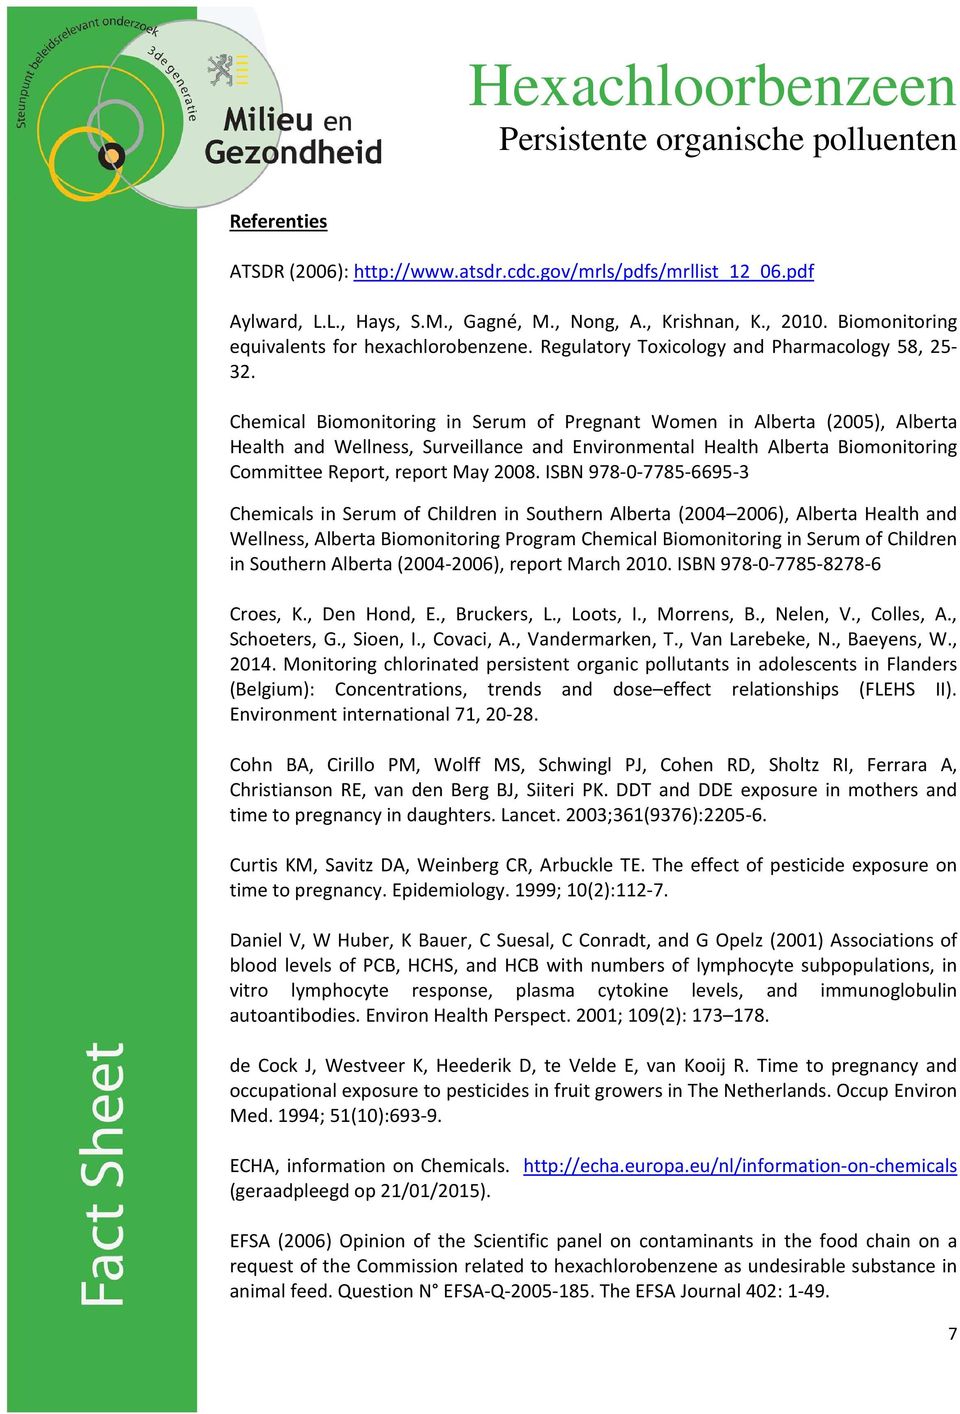 Chemical Biomonitoring in Serum of Pregnant Women in Alberta (2005), Alberta Health and Wellness, Surveillance and Environmental Health Alberta Biomonitoring Committee Report, report May 2008.